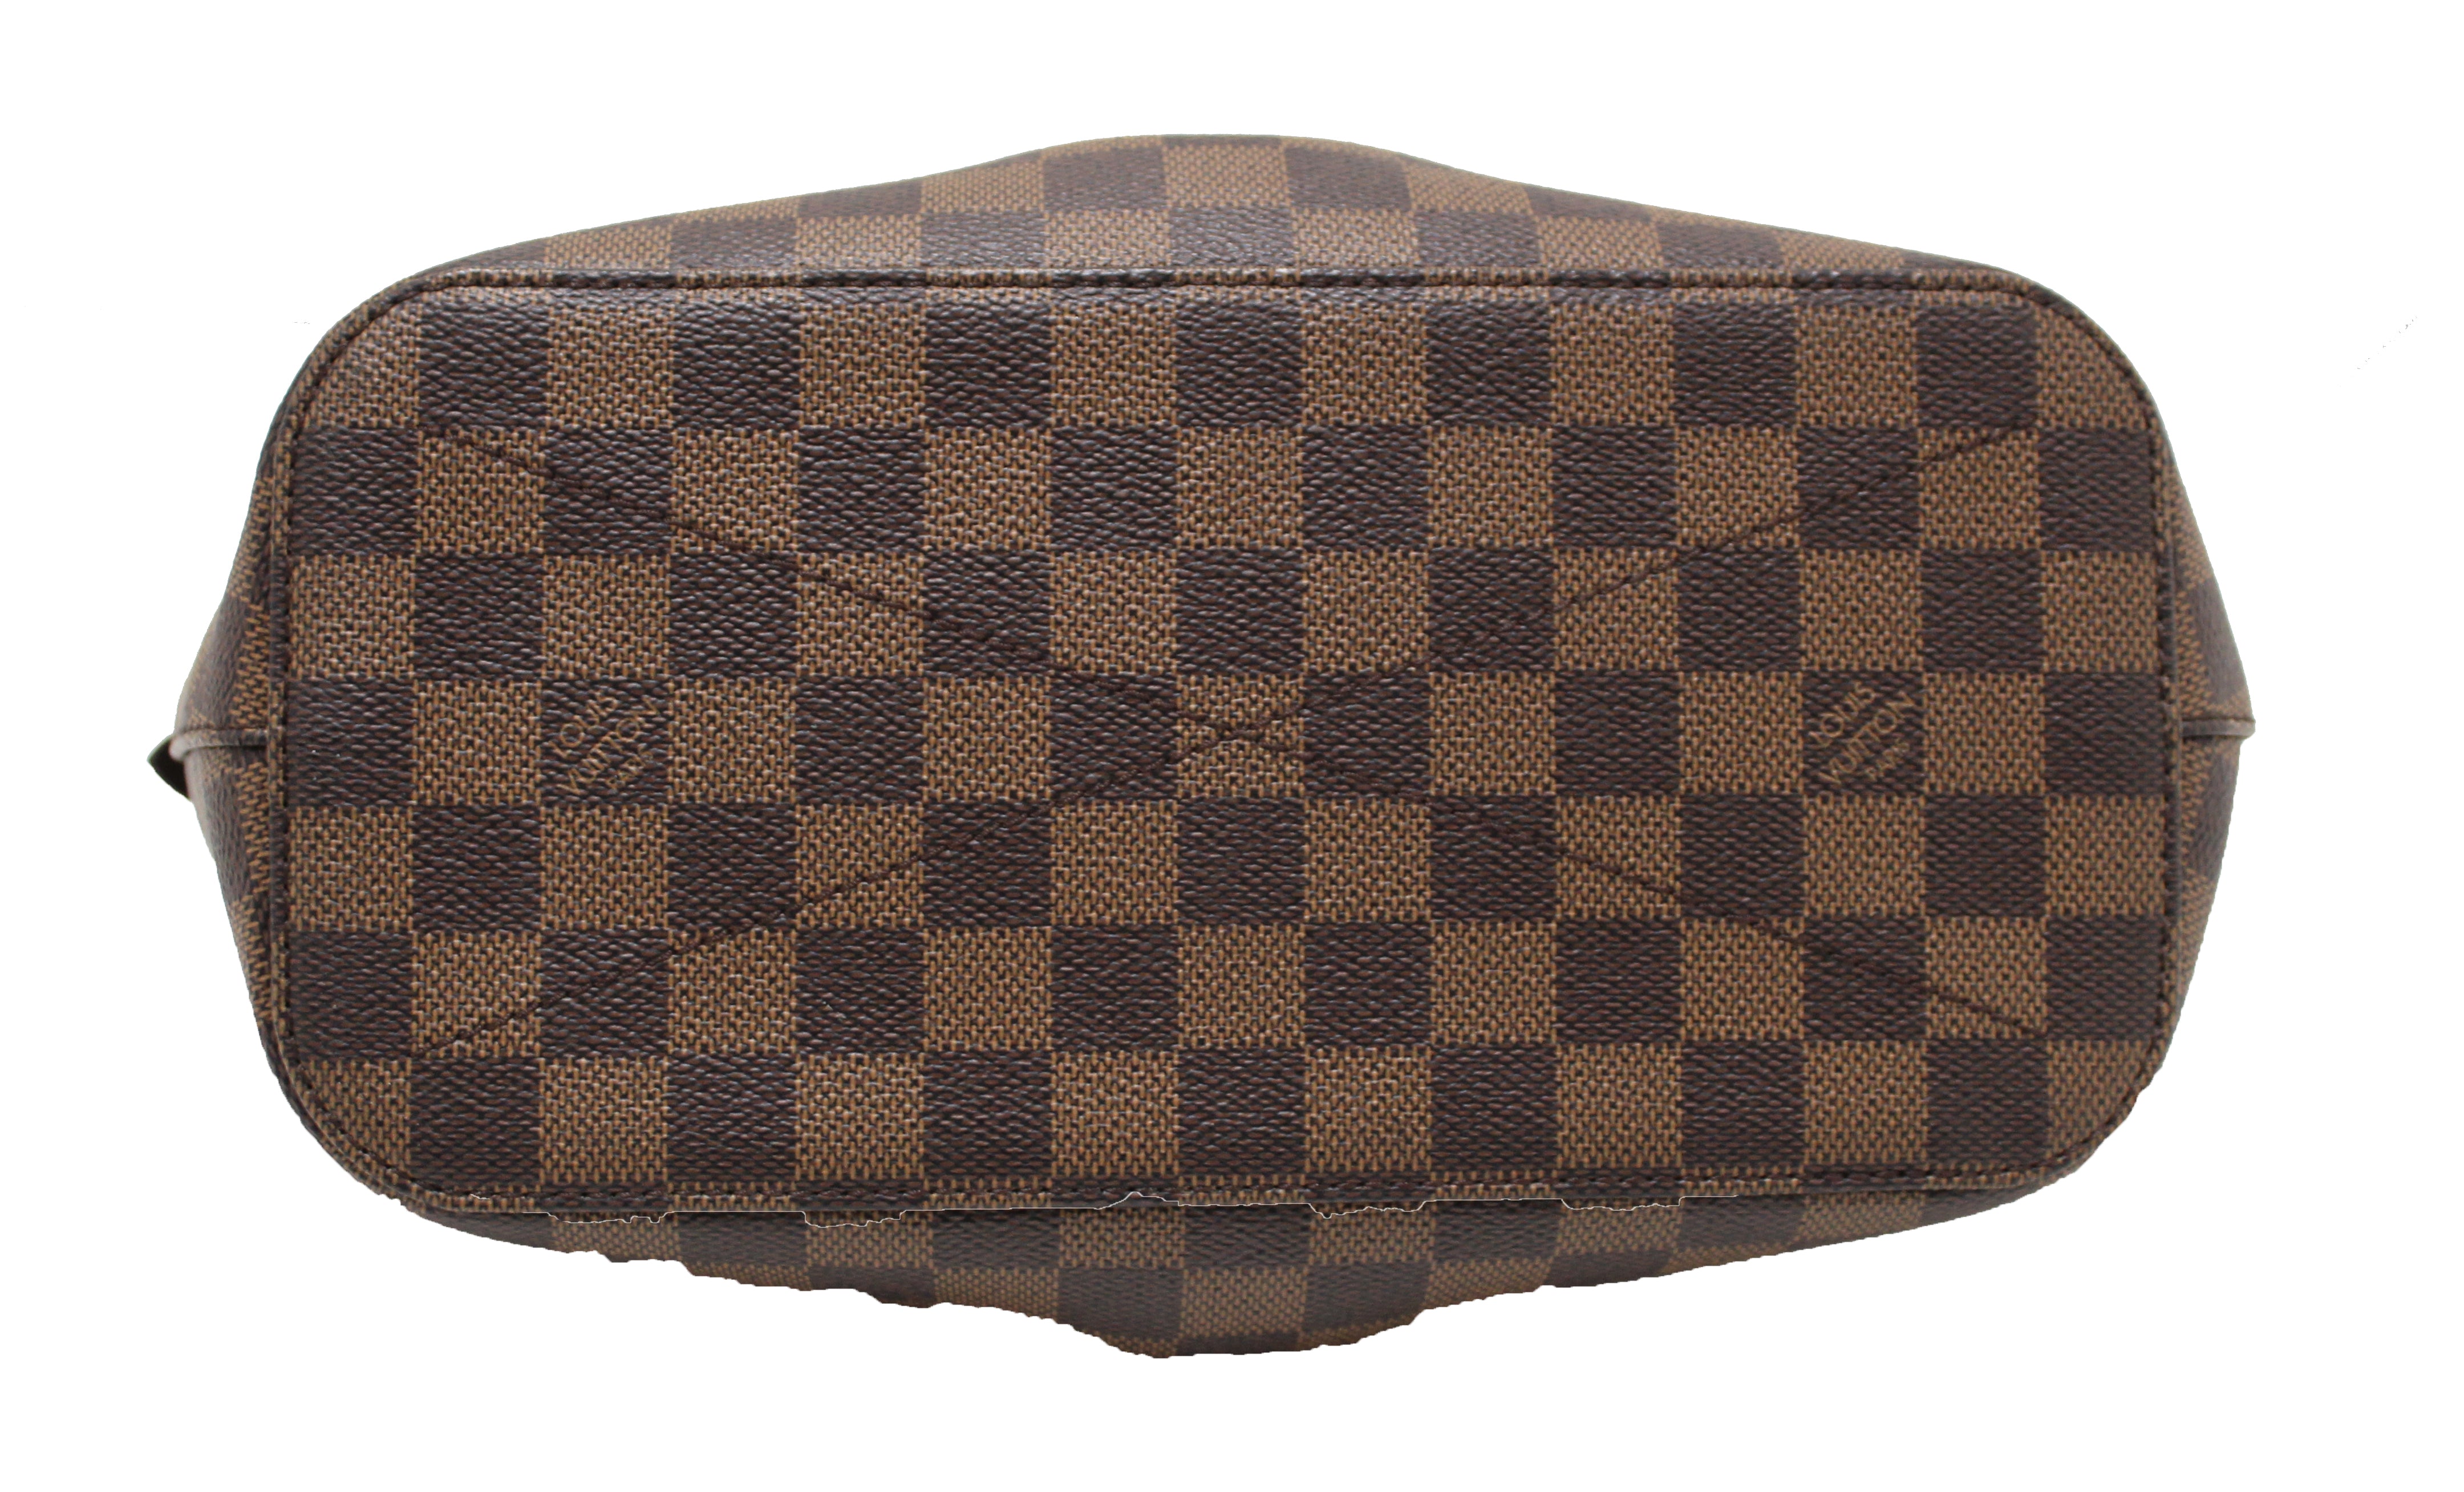 Authentic Louis Vuitton Damier Siena PM Shoulder Messenger Bag with Lo –  Paris Station Shop